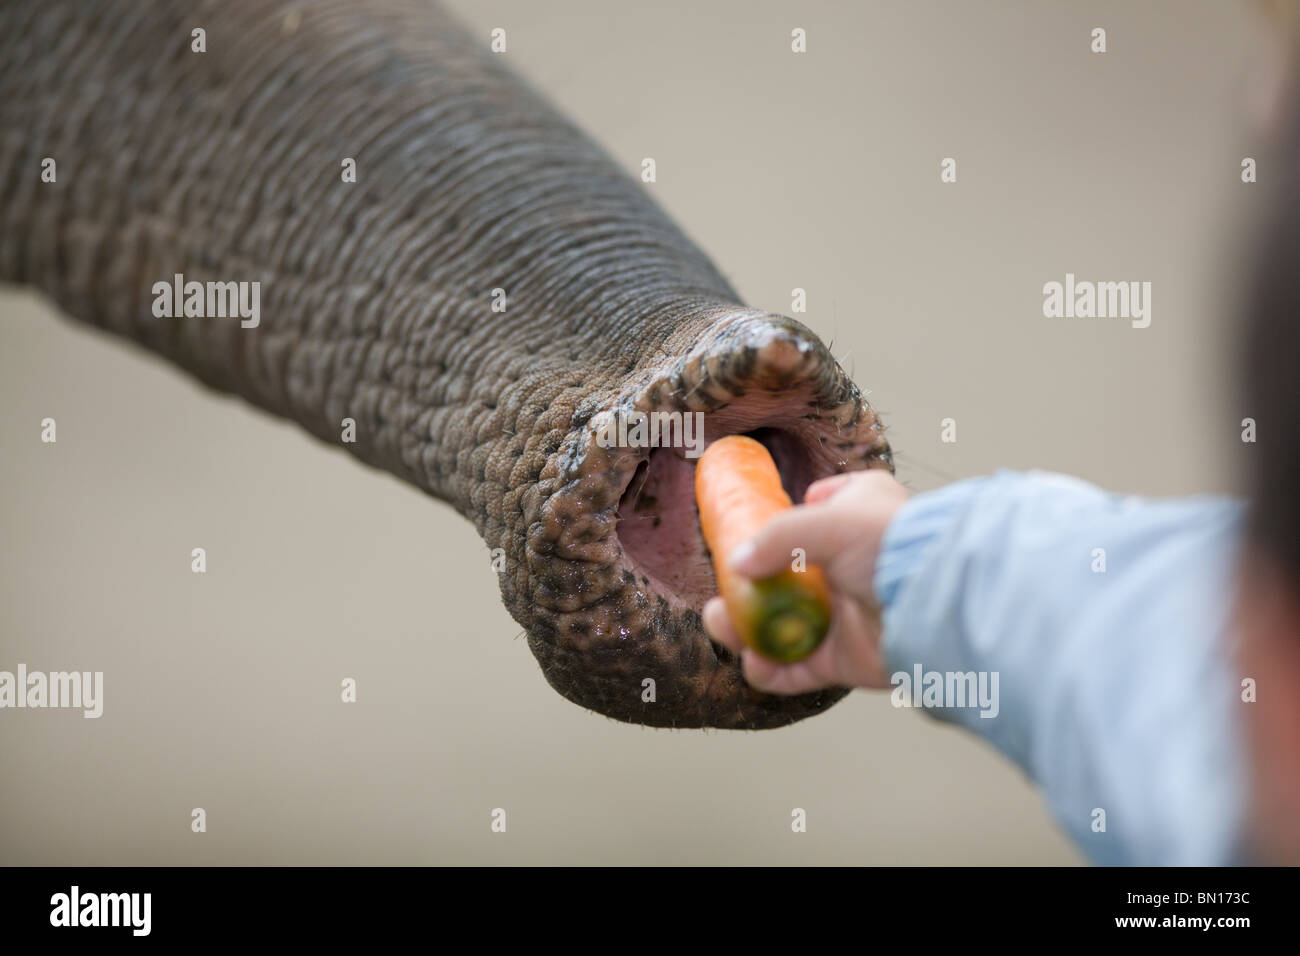 Alimentazione bambino elefante con una carota Foto Stock